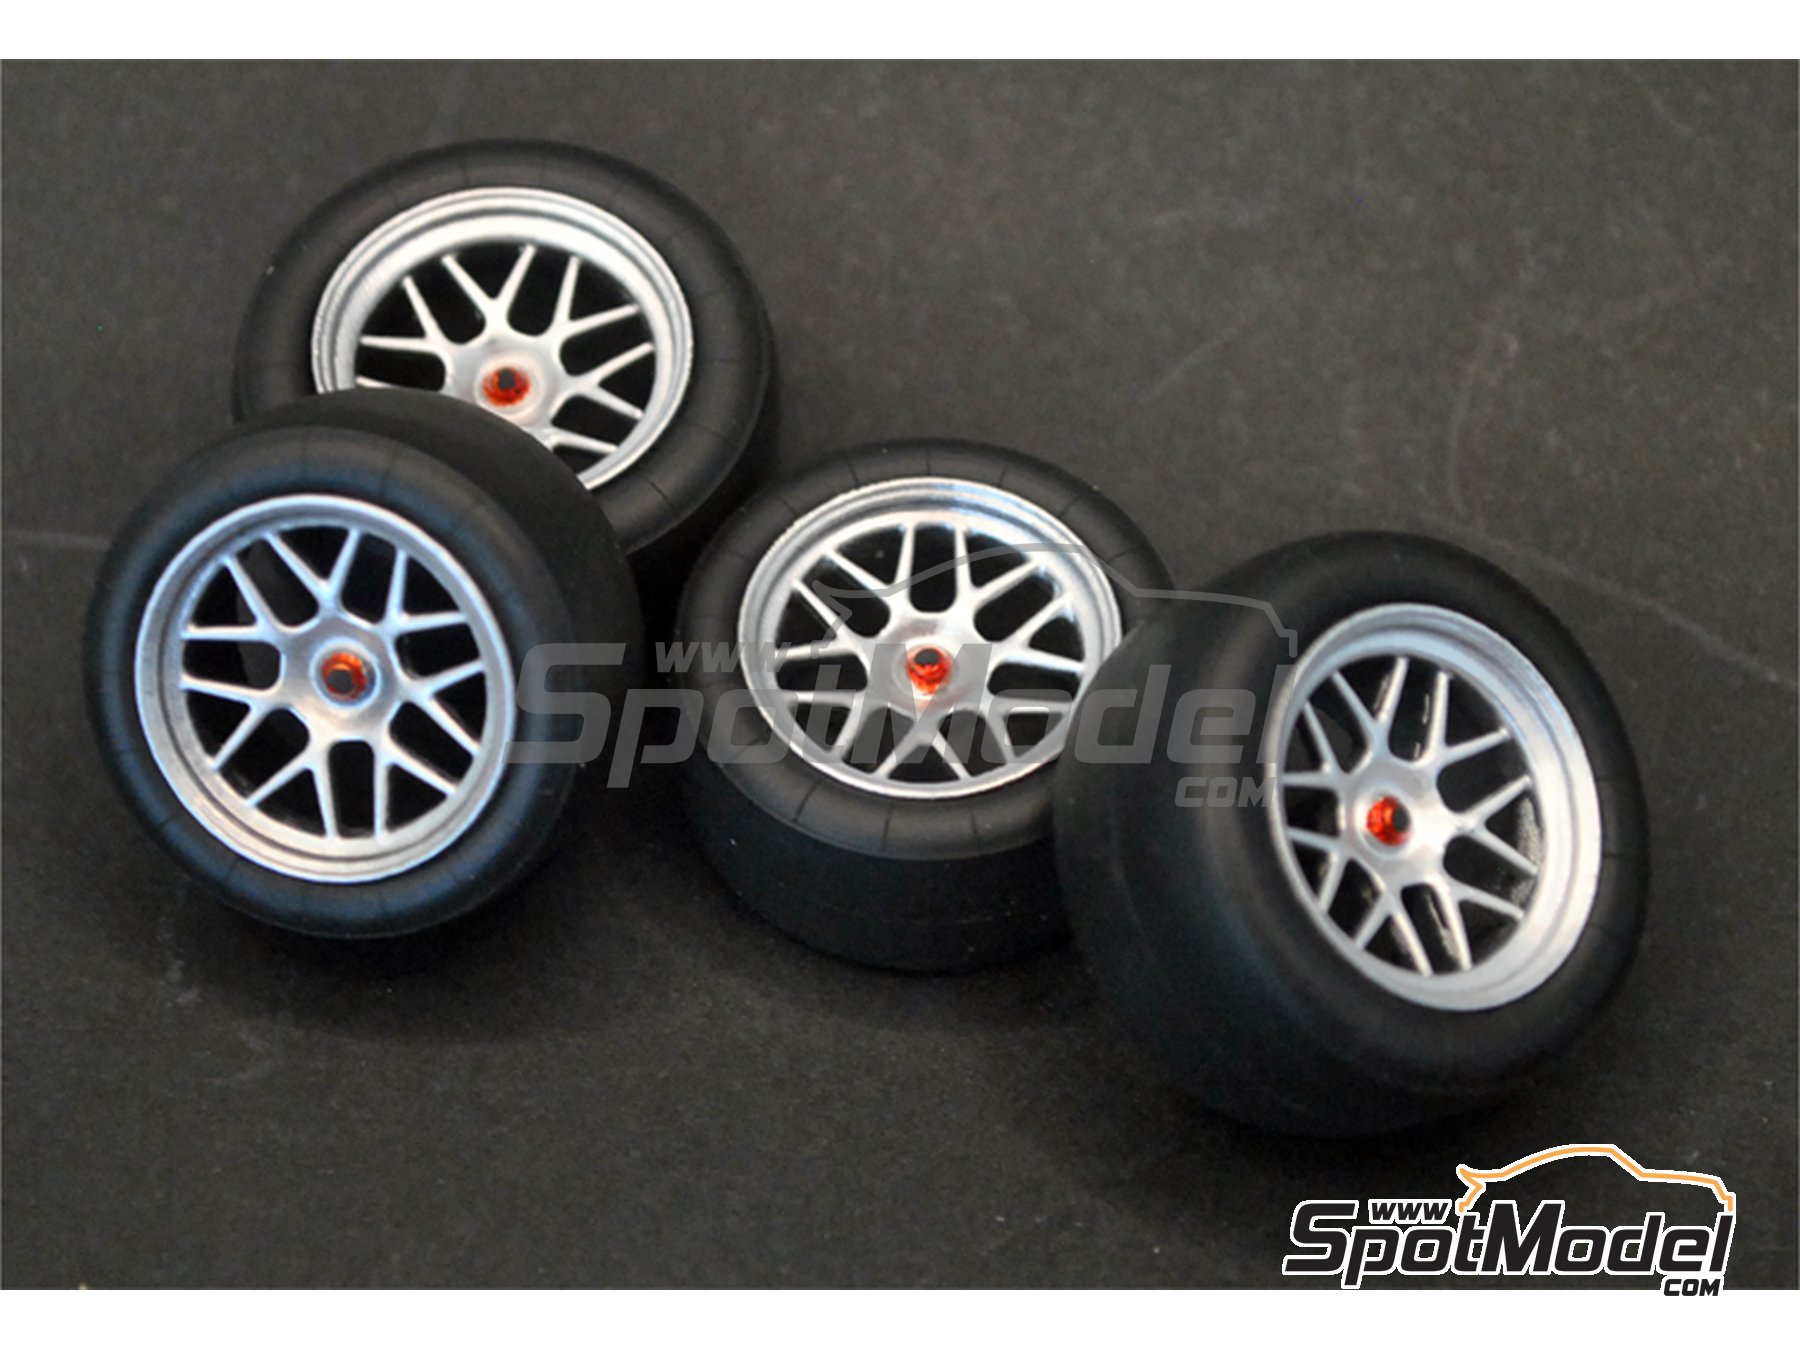 SL01-031 ScaleLab_24 1/24 911 GT3R wheels for Fujimi 